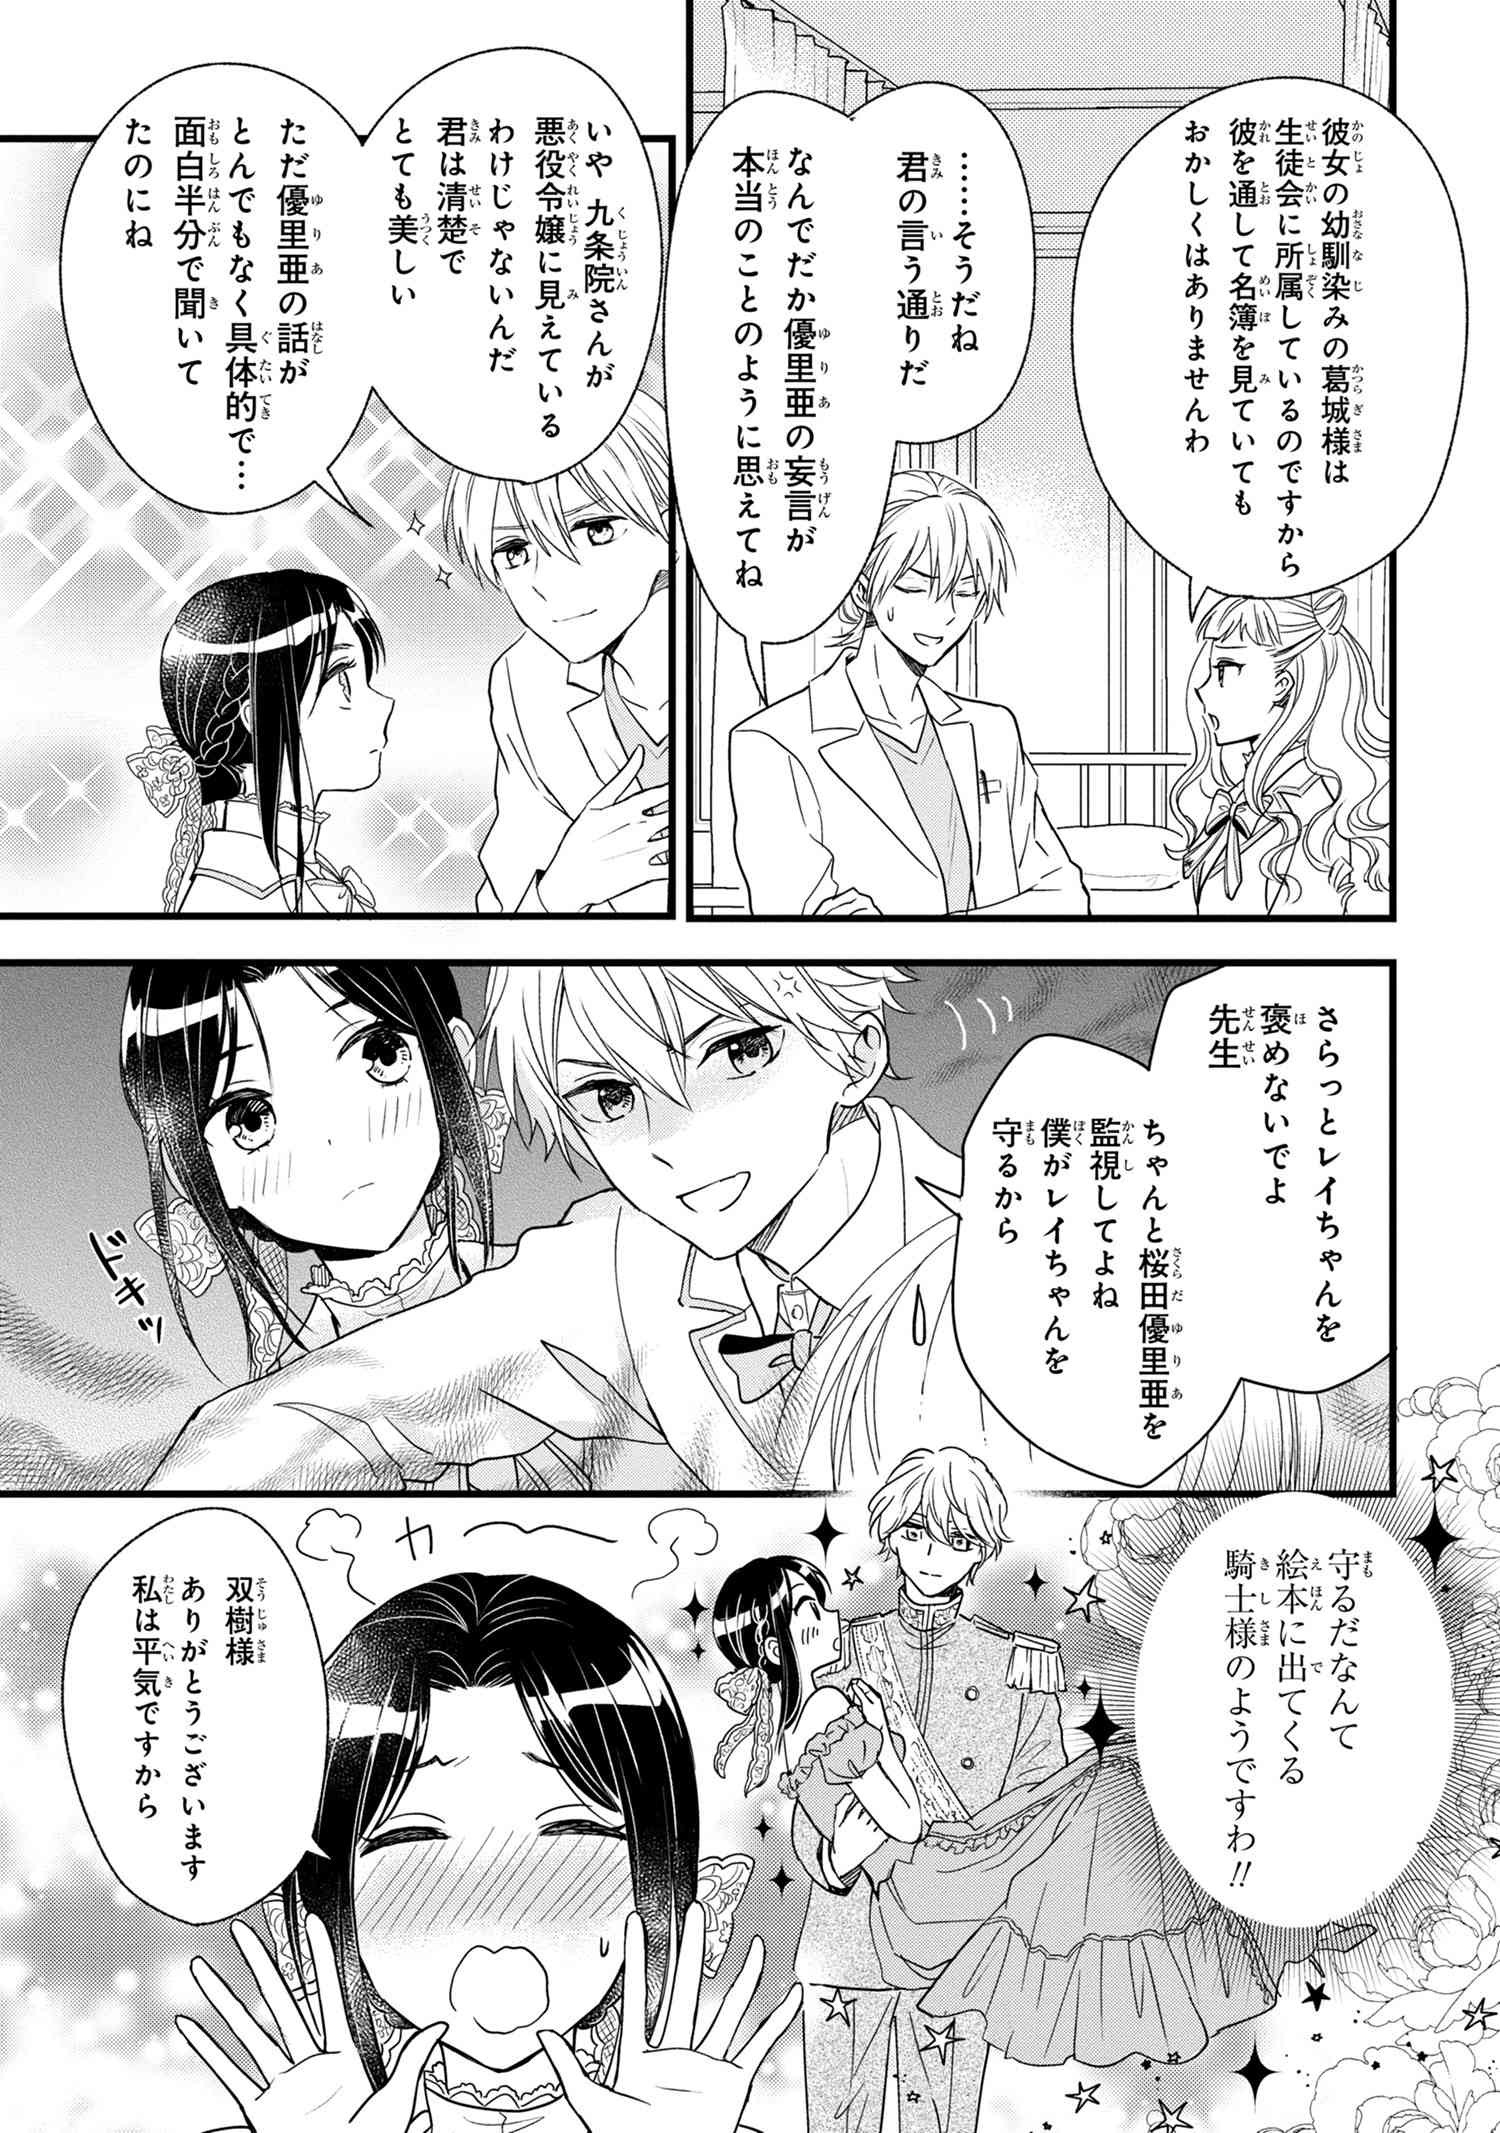 Reiko no Fuugi Akuyaku Reijou to Yobarete imasu ga, tada no Binbou Musume desu - Chapter 3-2 - Page 9